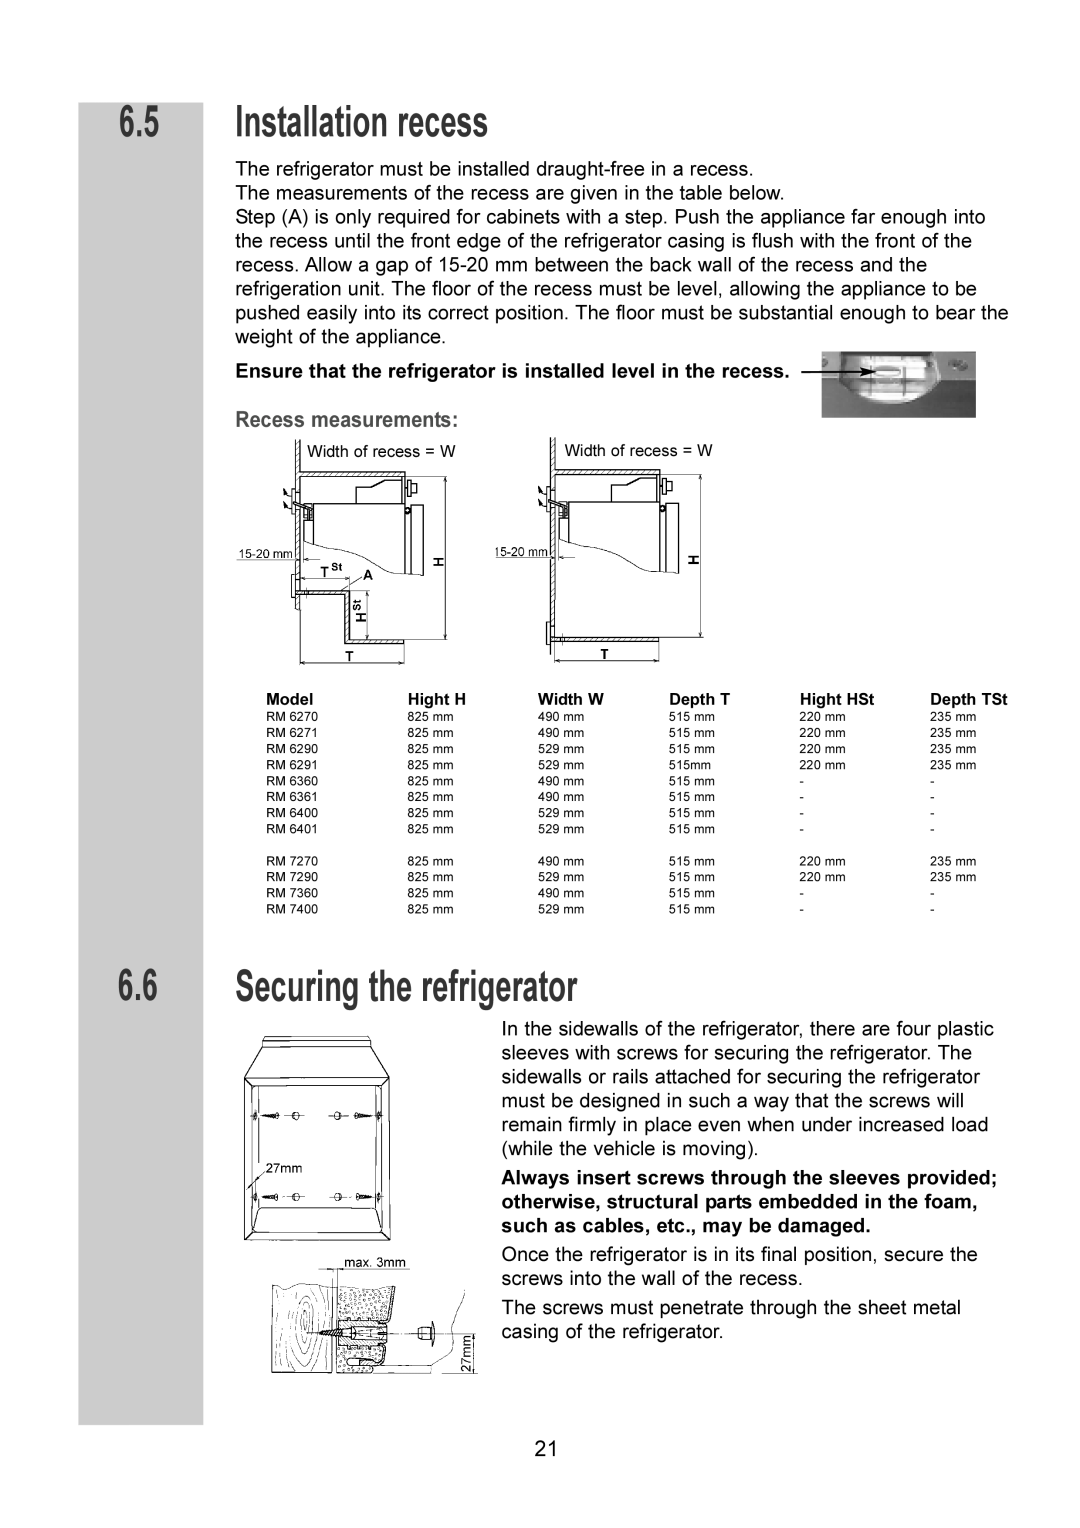 Dometic RM 7400(L), RM 6261(L), RM 6200(L) manual 6.5Installation recess, 6.6Securing the refrigerator, Recess measurements 